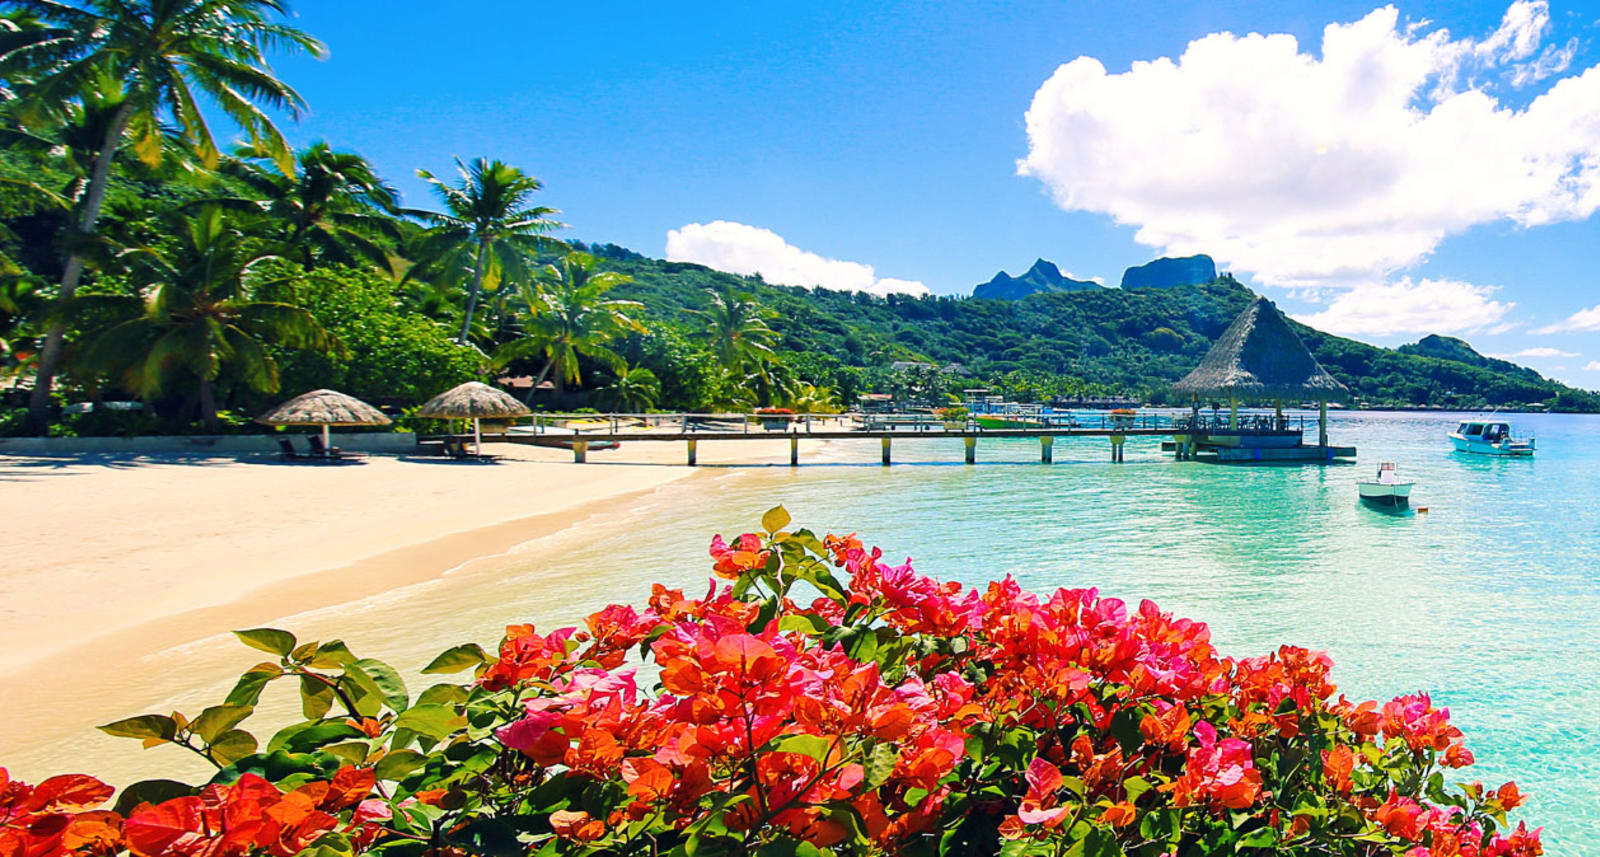 Tahiti beach with boats